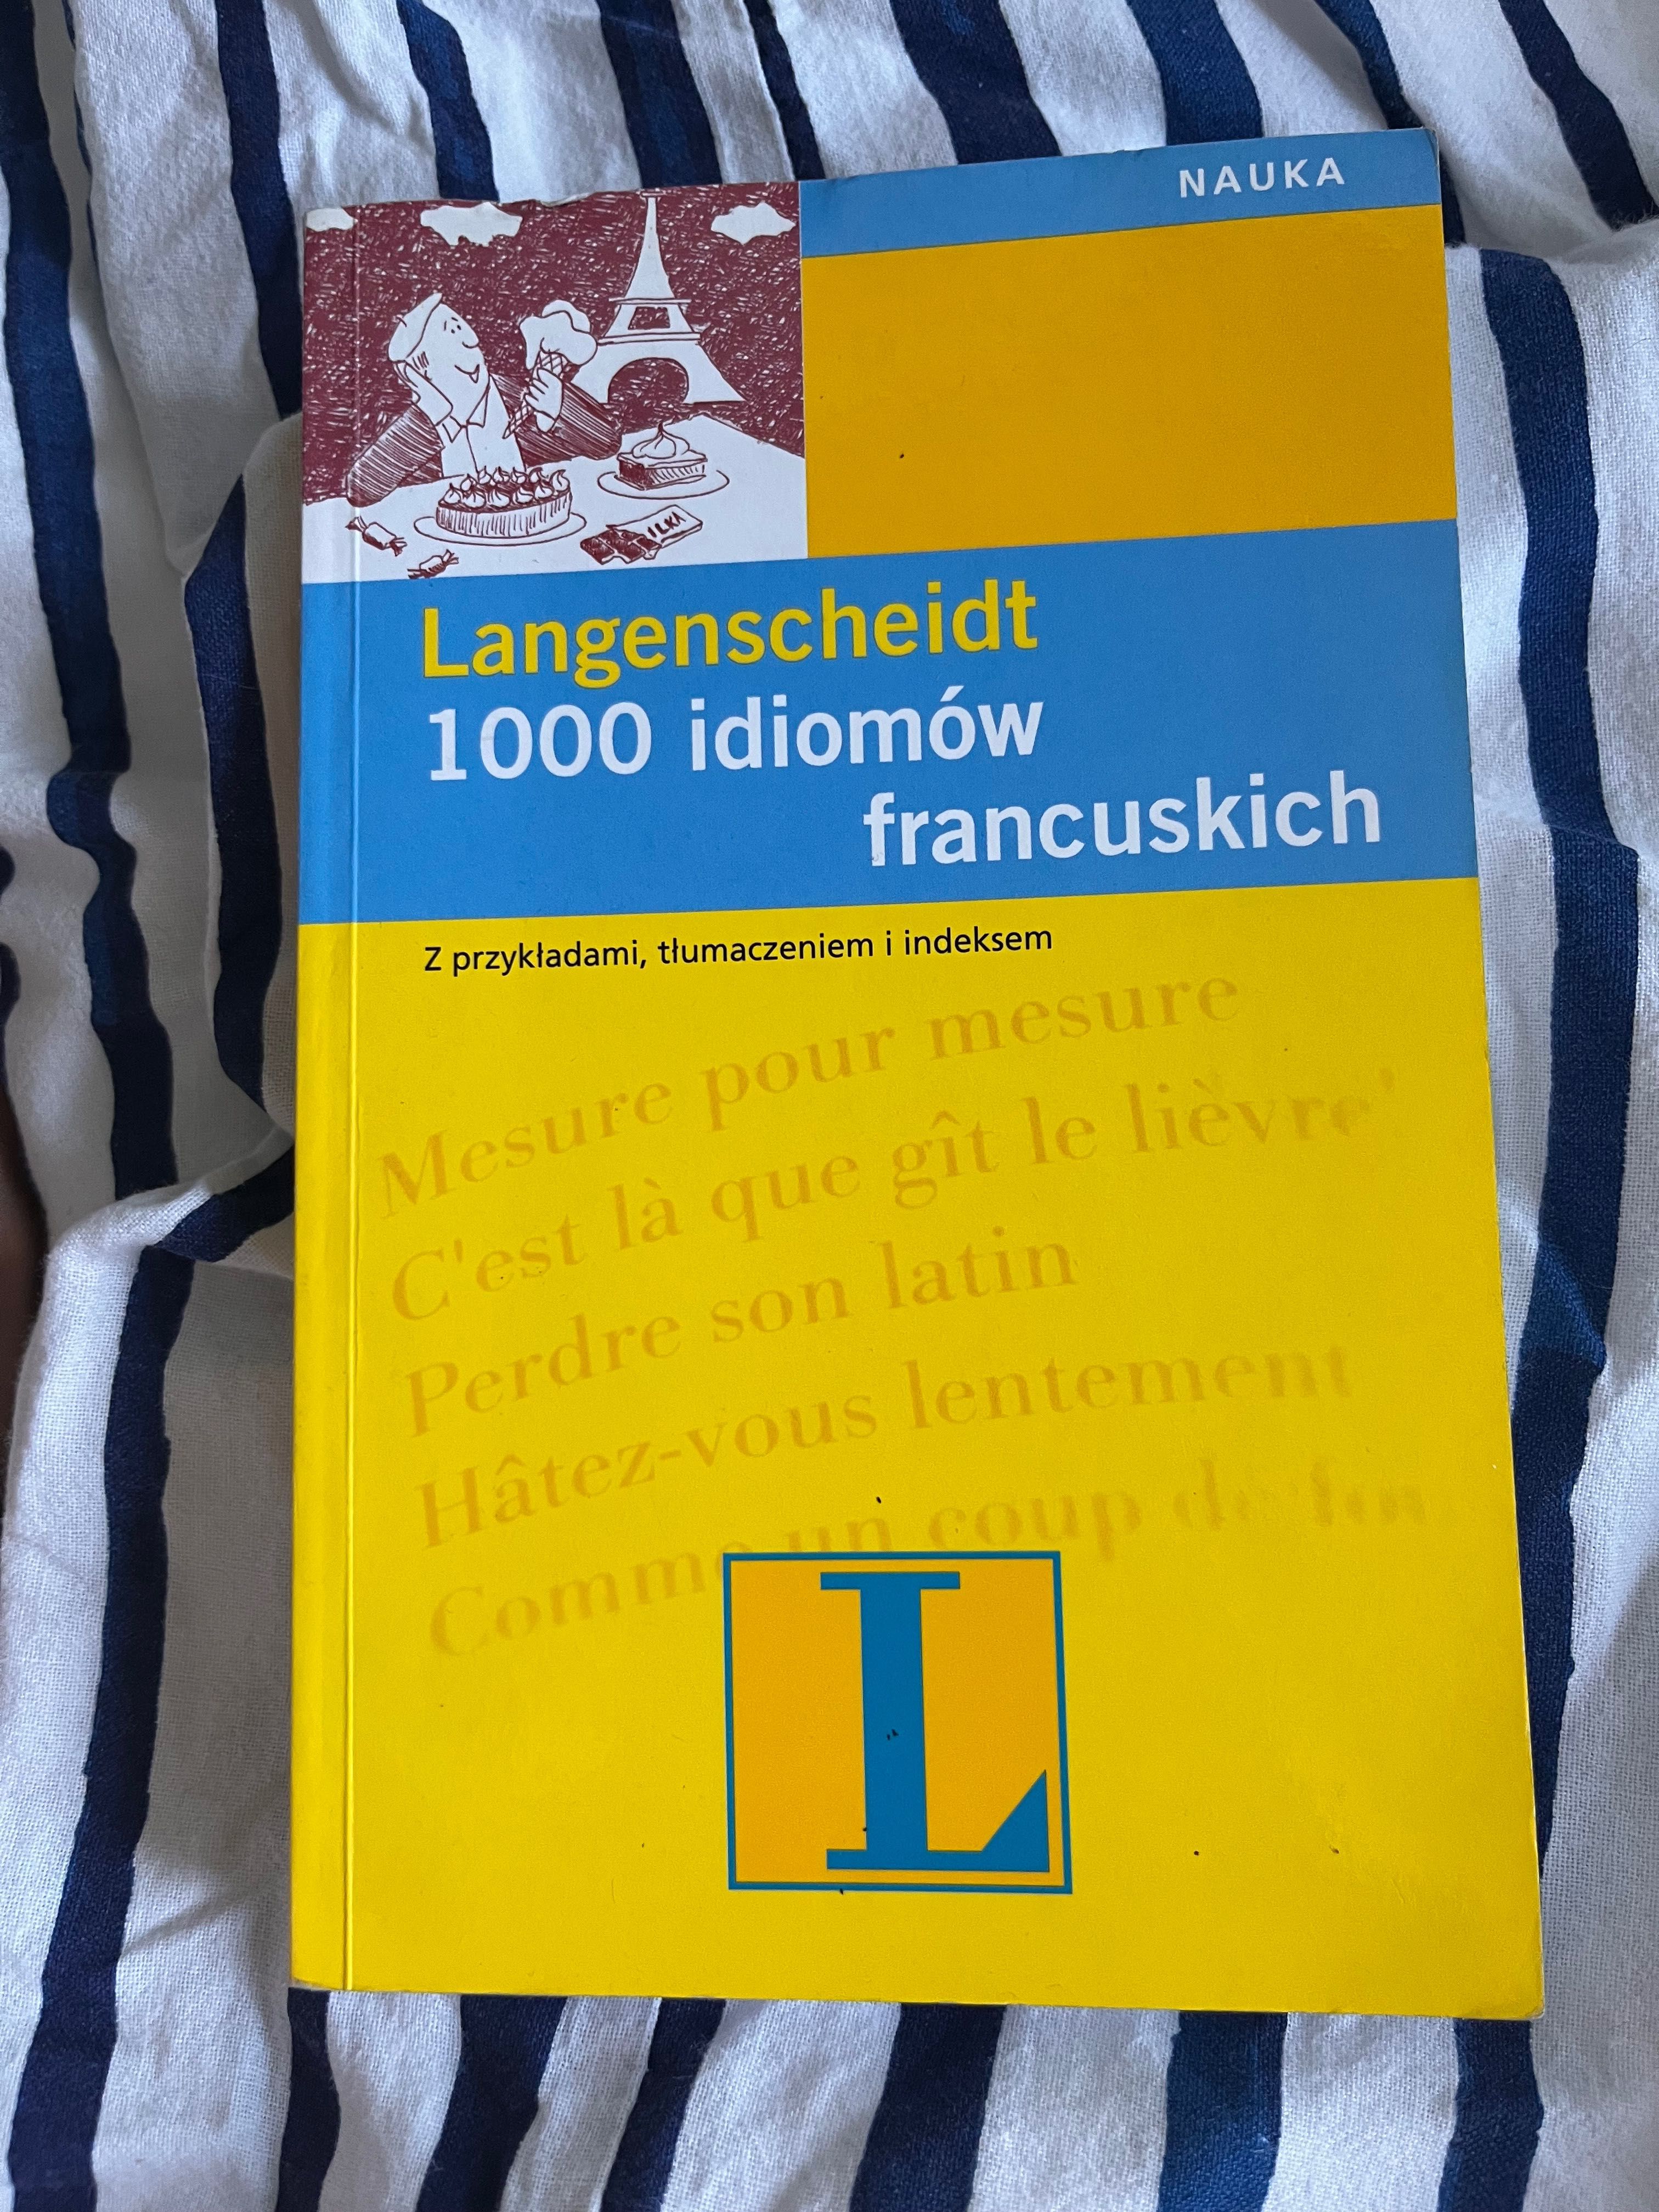 1000 idiomów francuskich